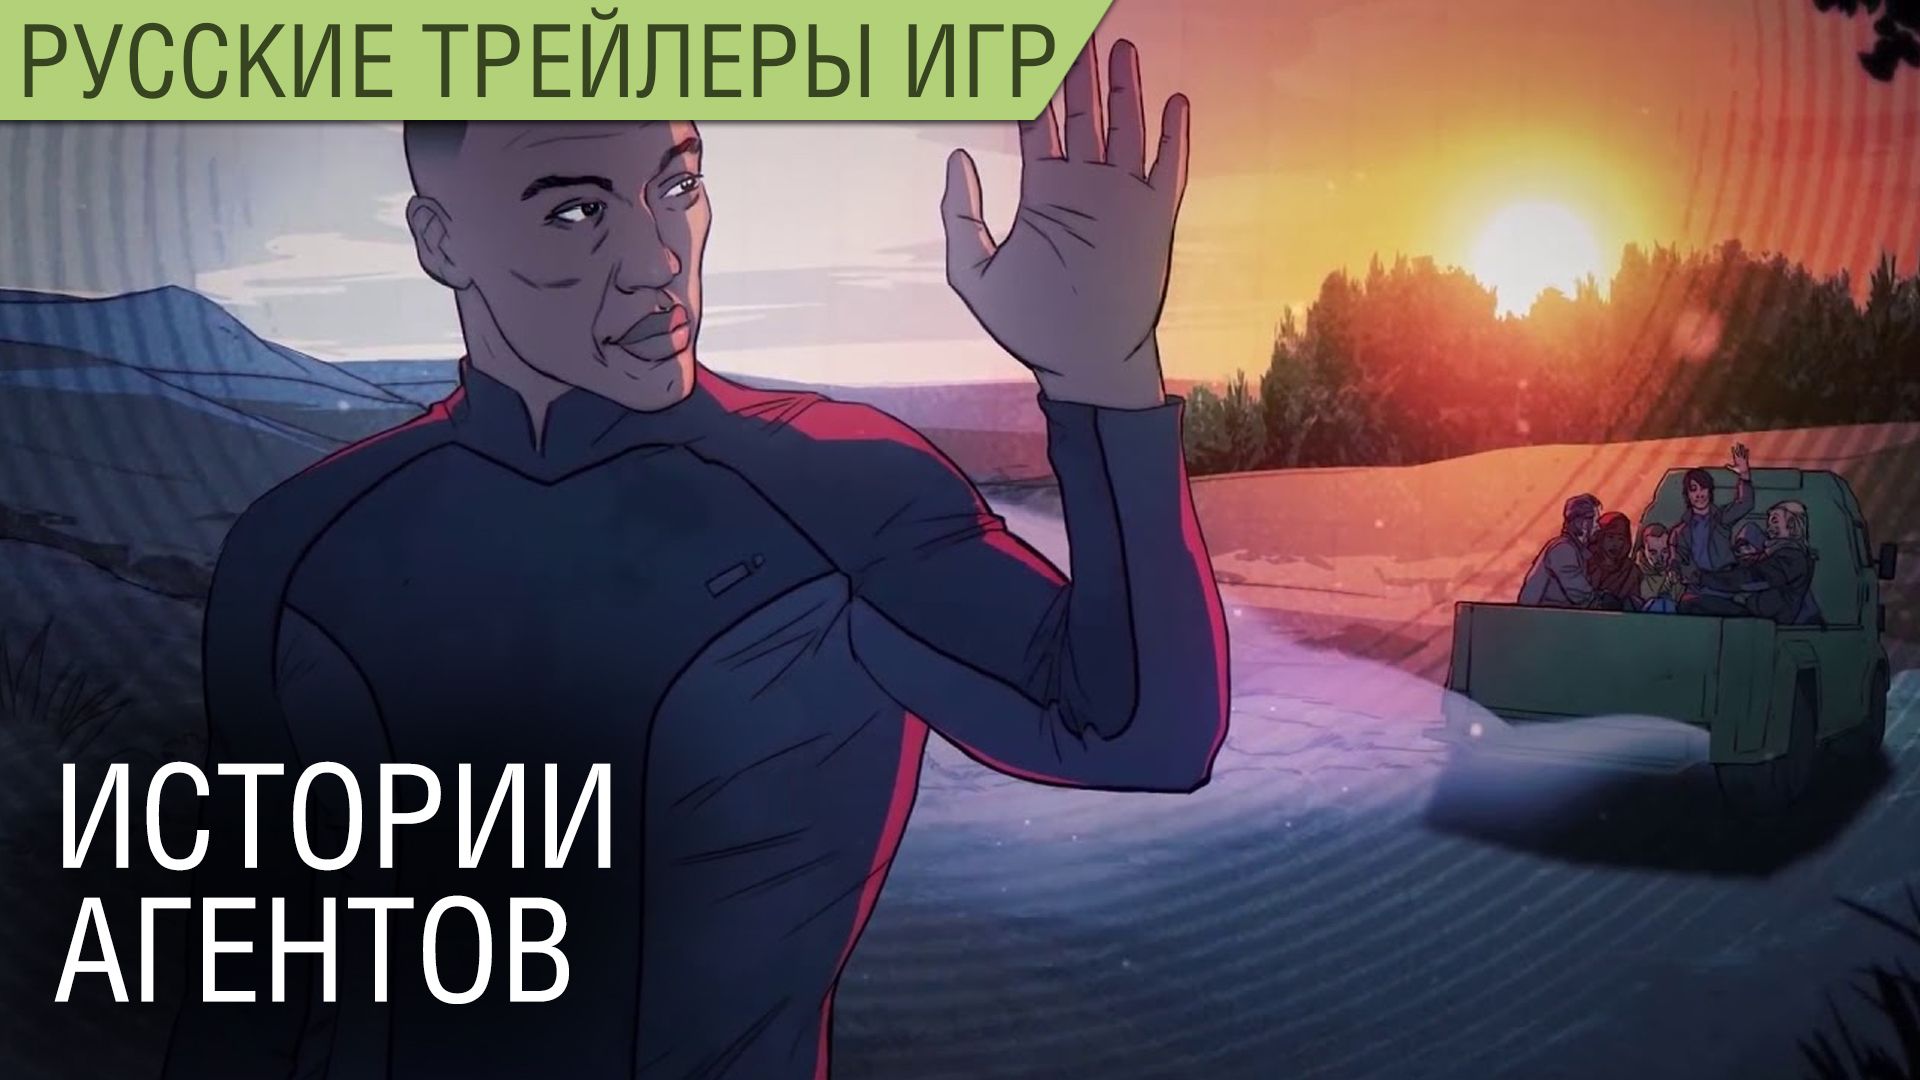 XCOM: Chimera Squad - Классы персонажей на русском